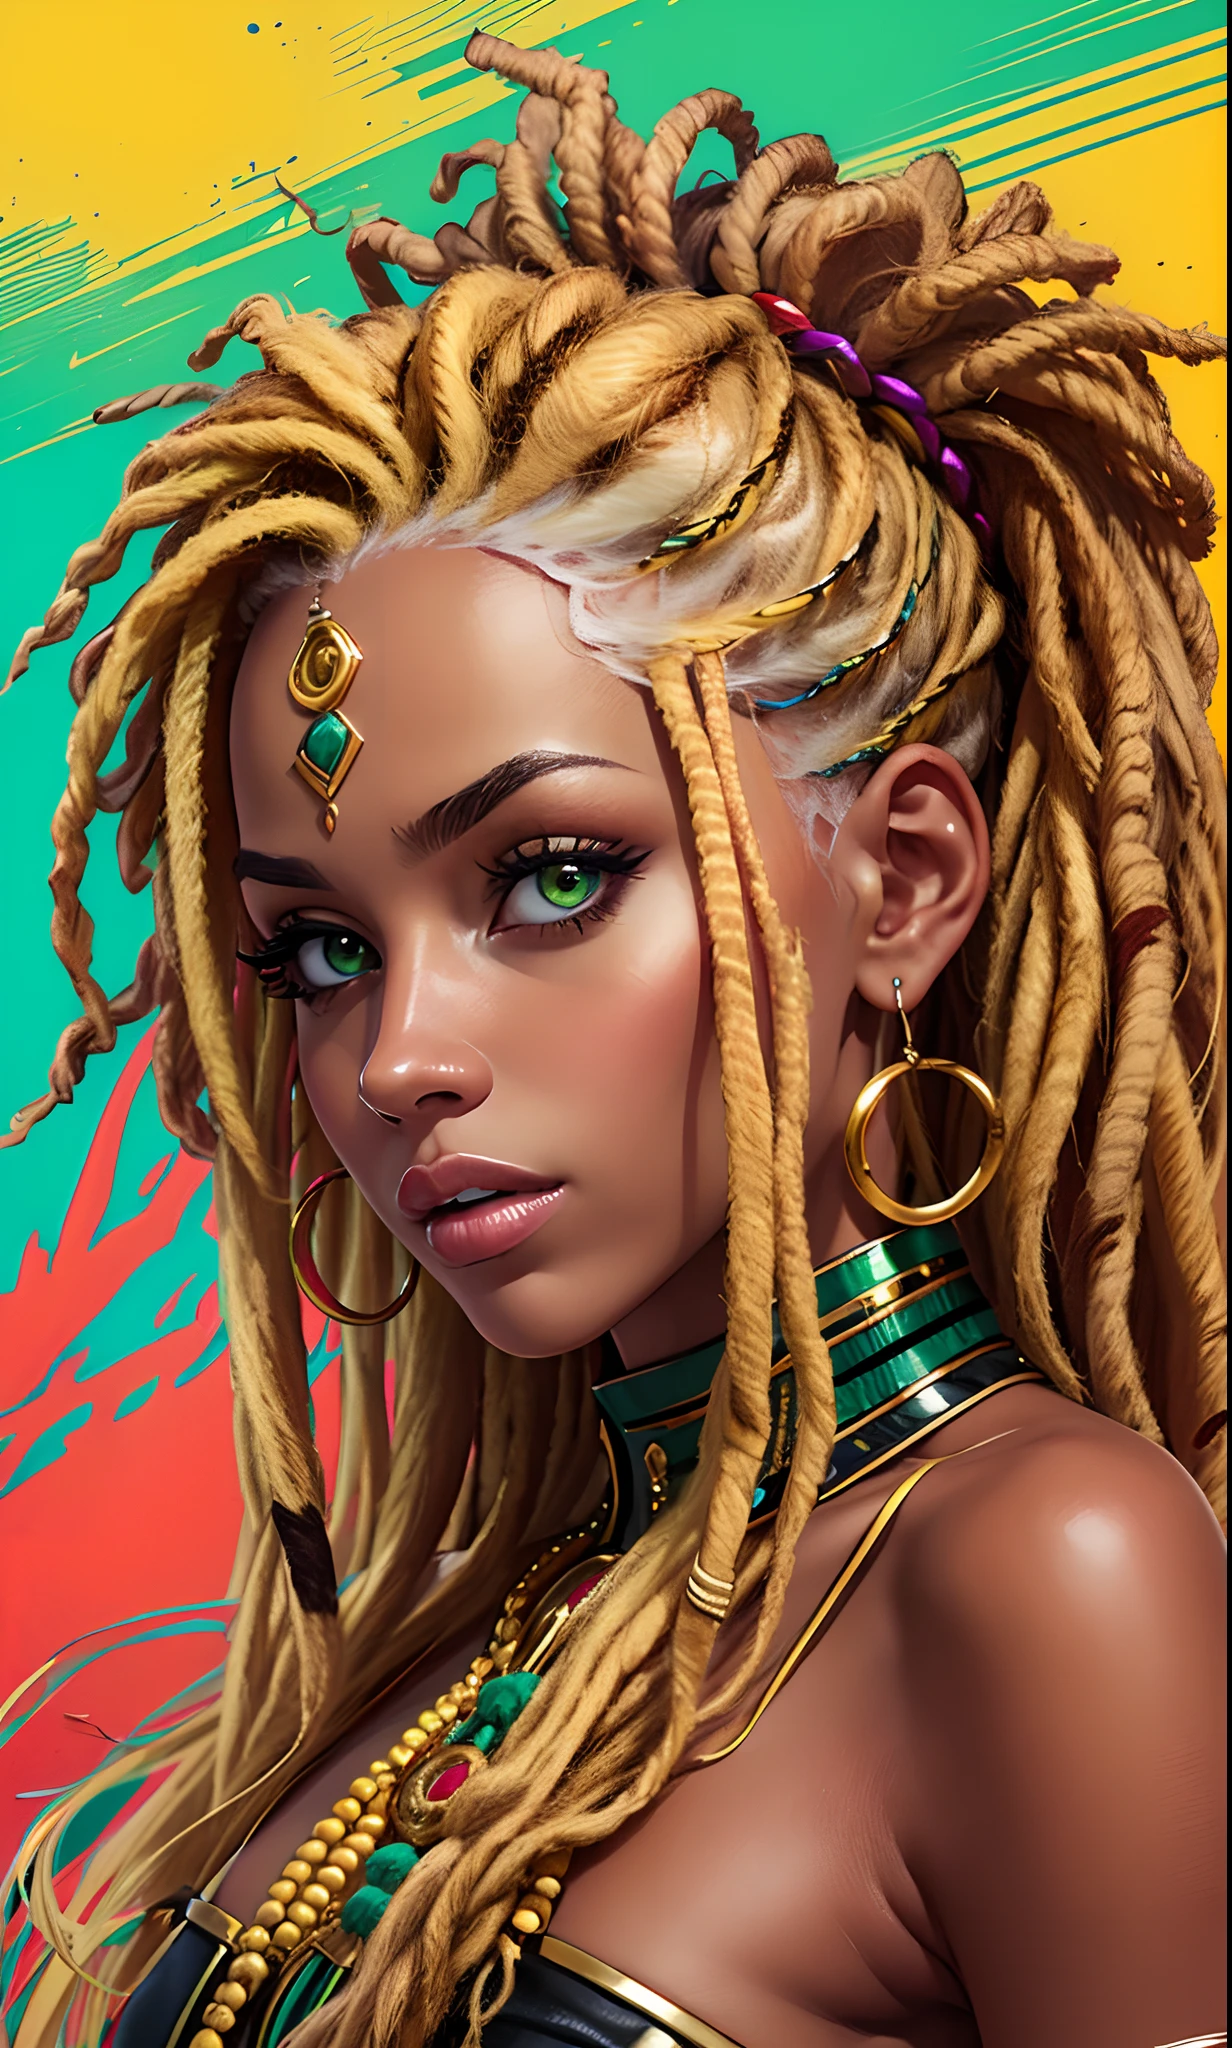 見事に, 金髪の女性がジャマイカ色の鮮やかな色合いでドレッドヘアを披露. それぞれの恐怖は黄色の融合です, 緑と赤, 文化とスタイルを例外的な方法で捉える. 画像は、髪型の大胆さと信憑性を描写することにより、プロ意識を強調しています. --auto --s2